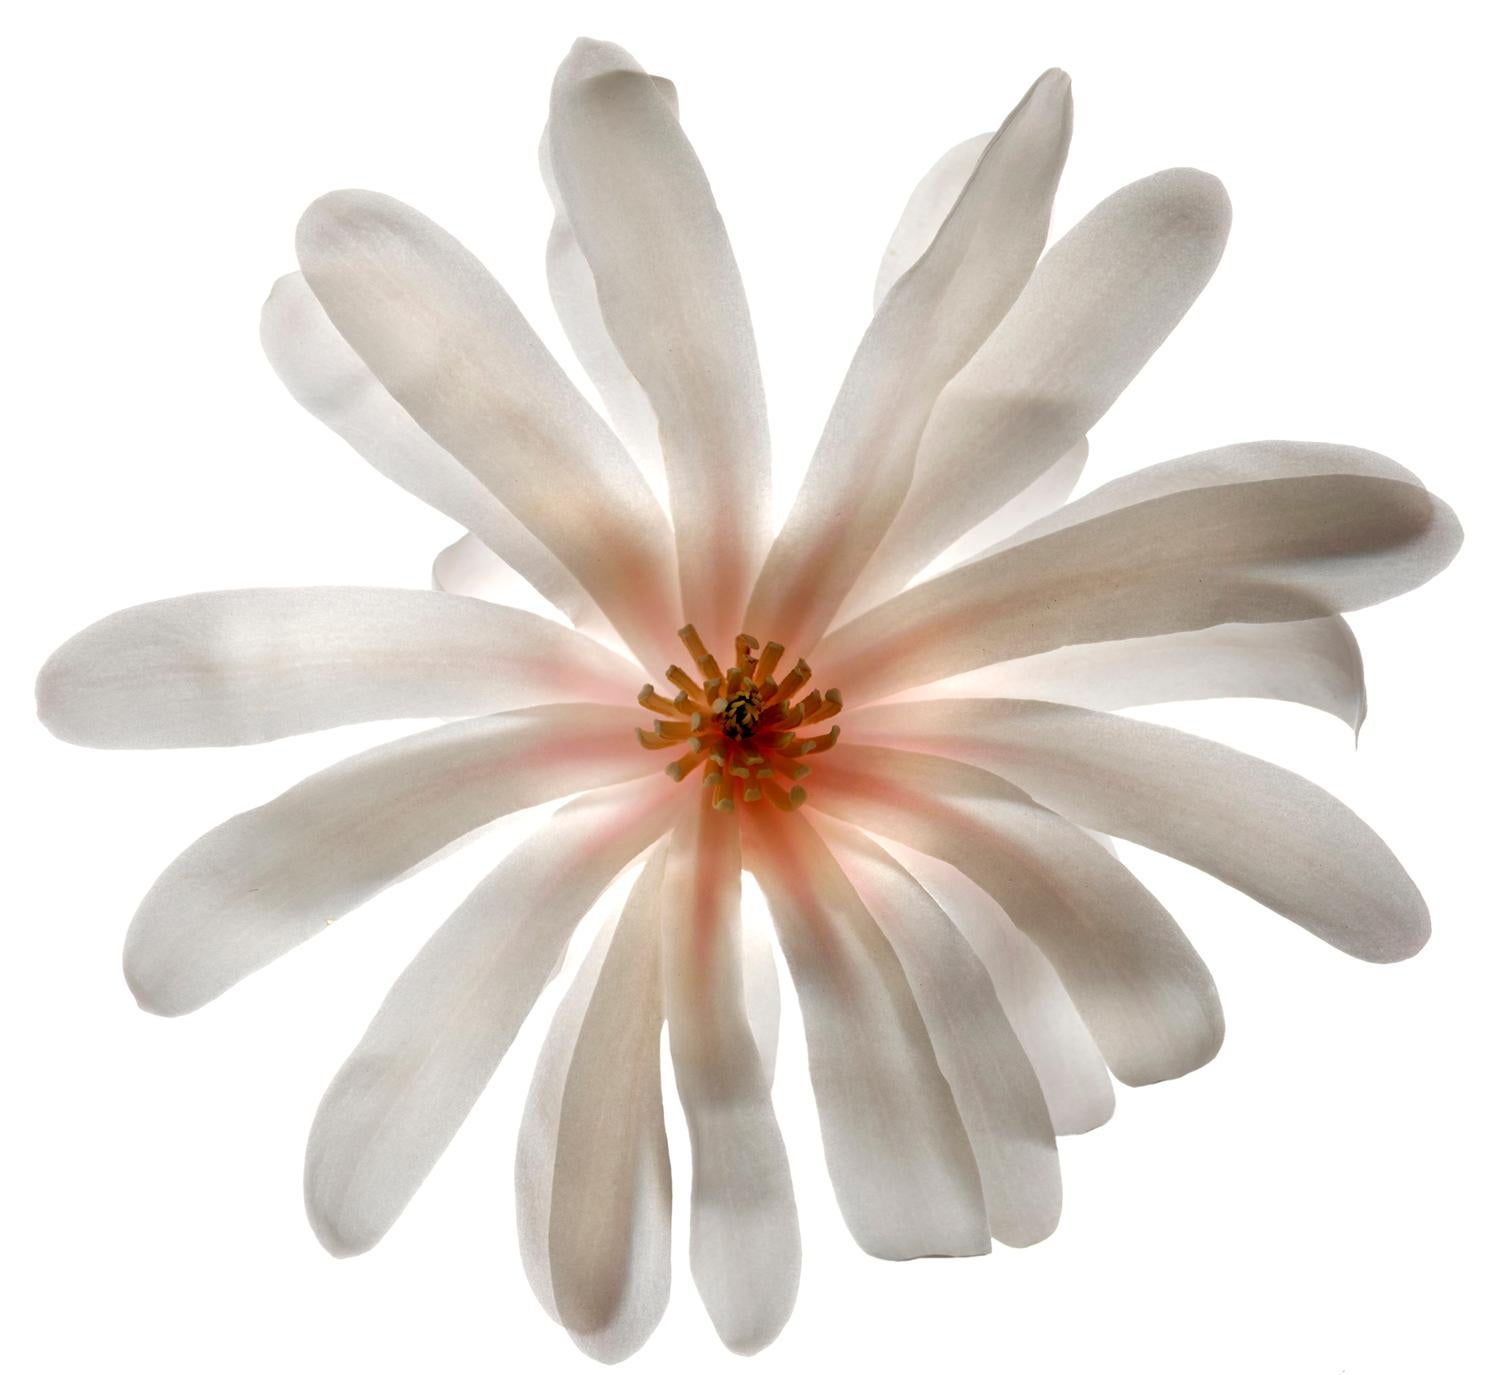 Sans titre - Numéro 74 : Photographie de nature morte de fleur blanche et centre orange rose